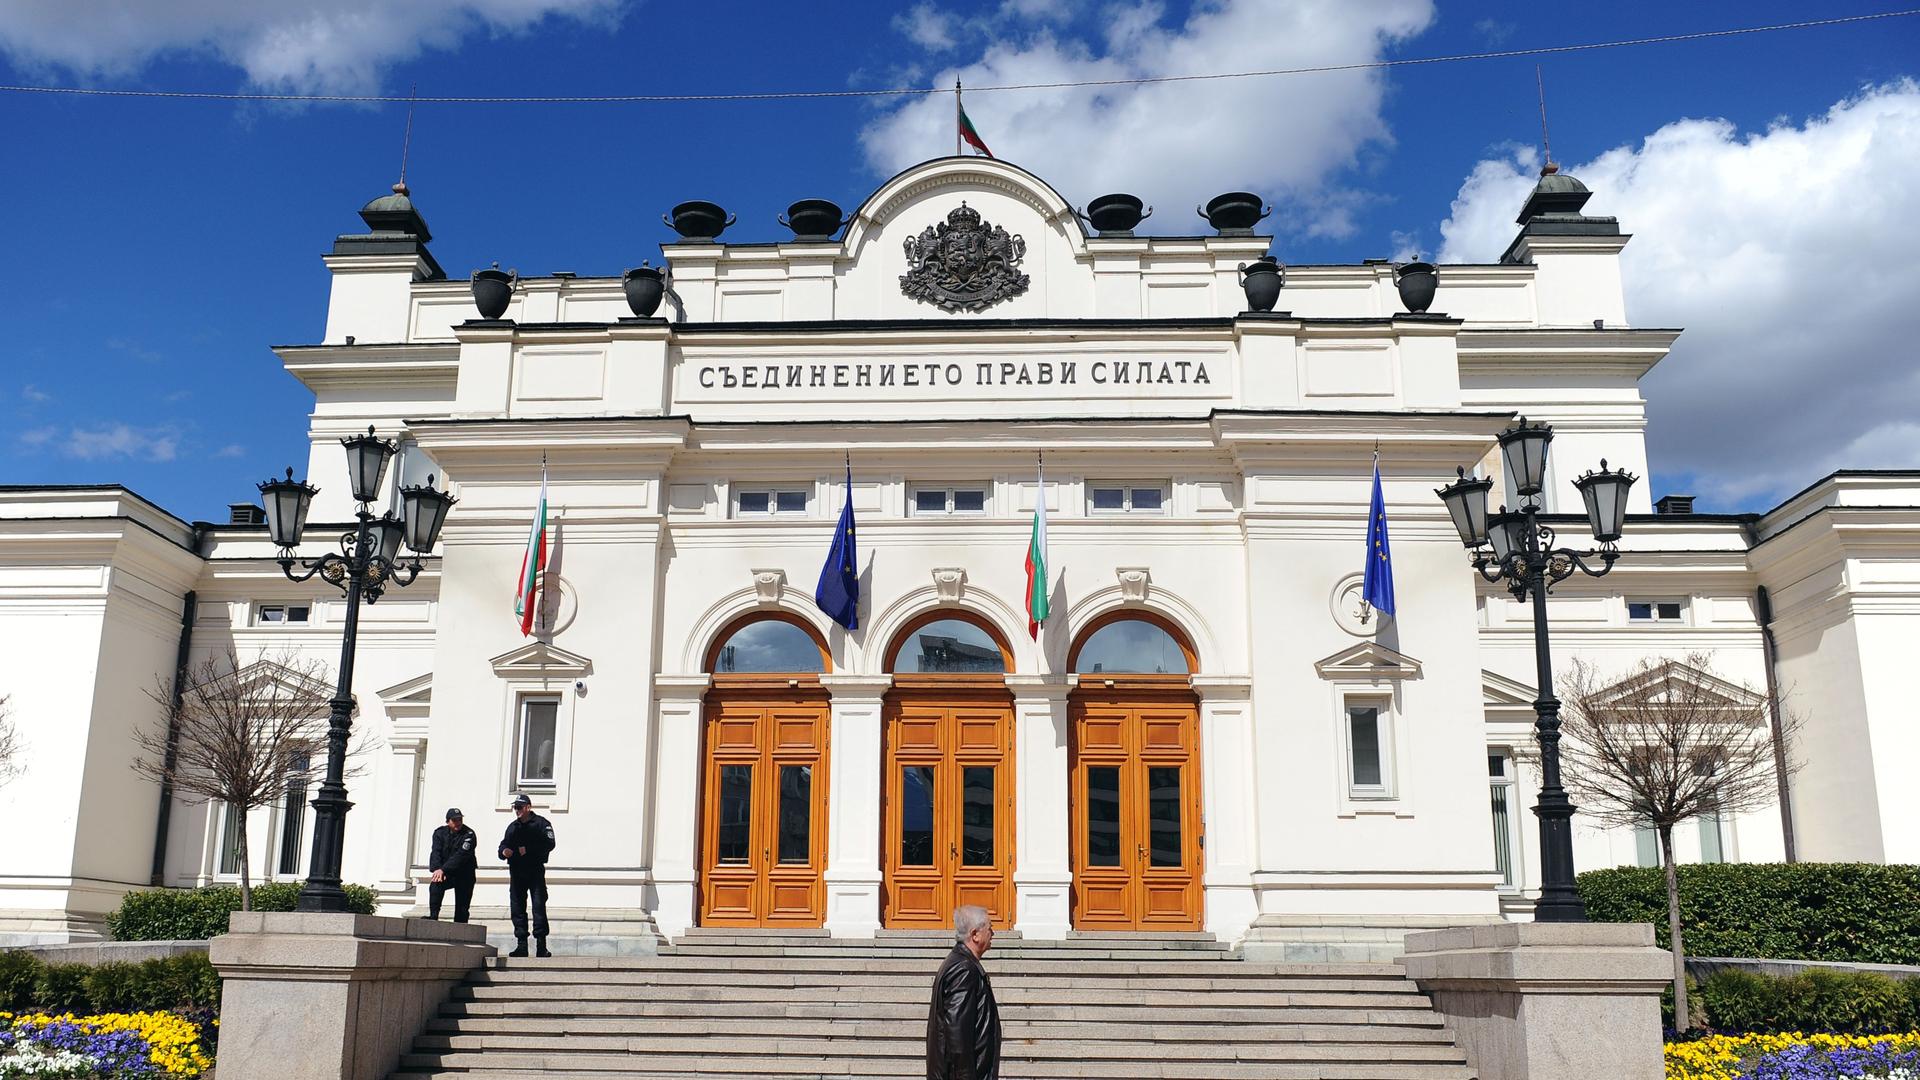 Das weiße Parlamentsgebäude hat drei braune Eingangstüren und ist mit Flaggen geschmückt. Mehrere Stufen führen zum Eingang.